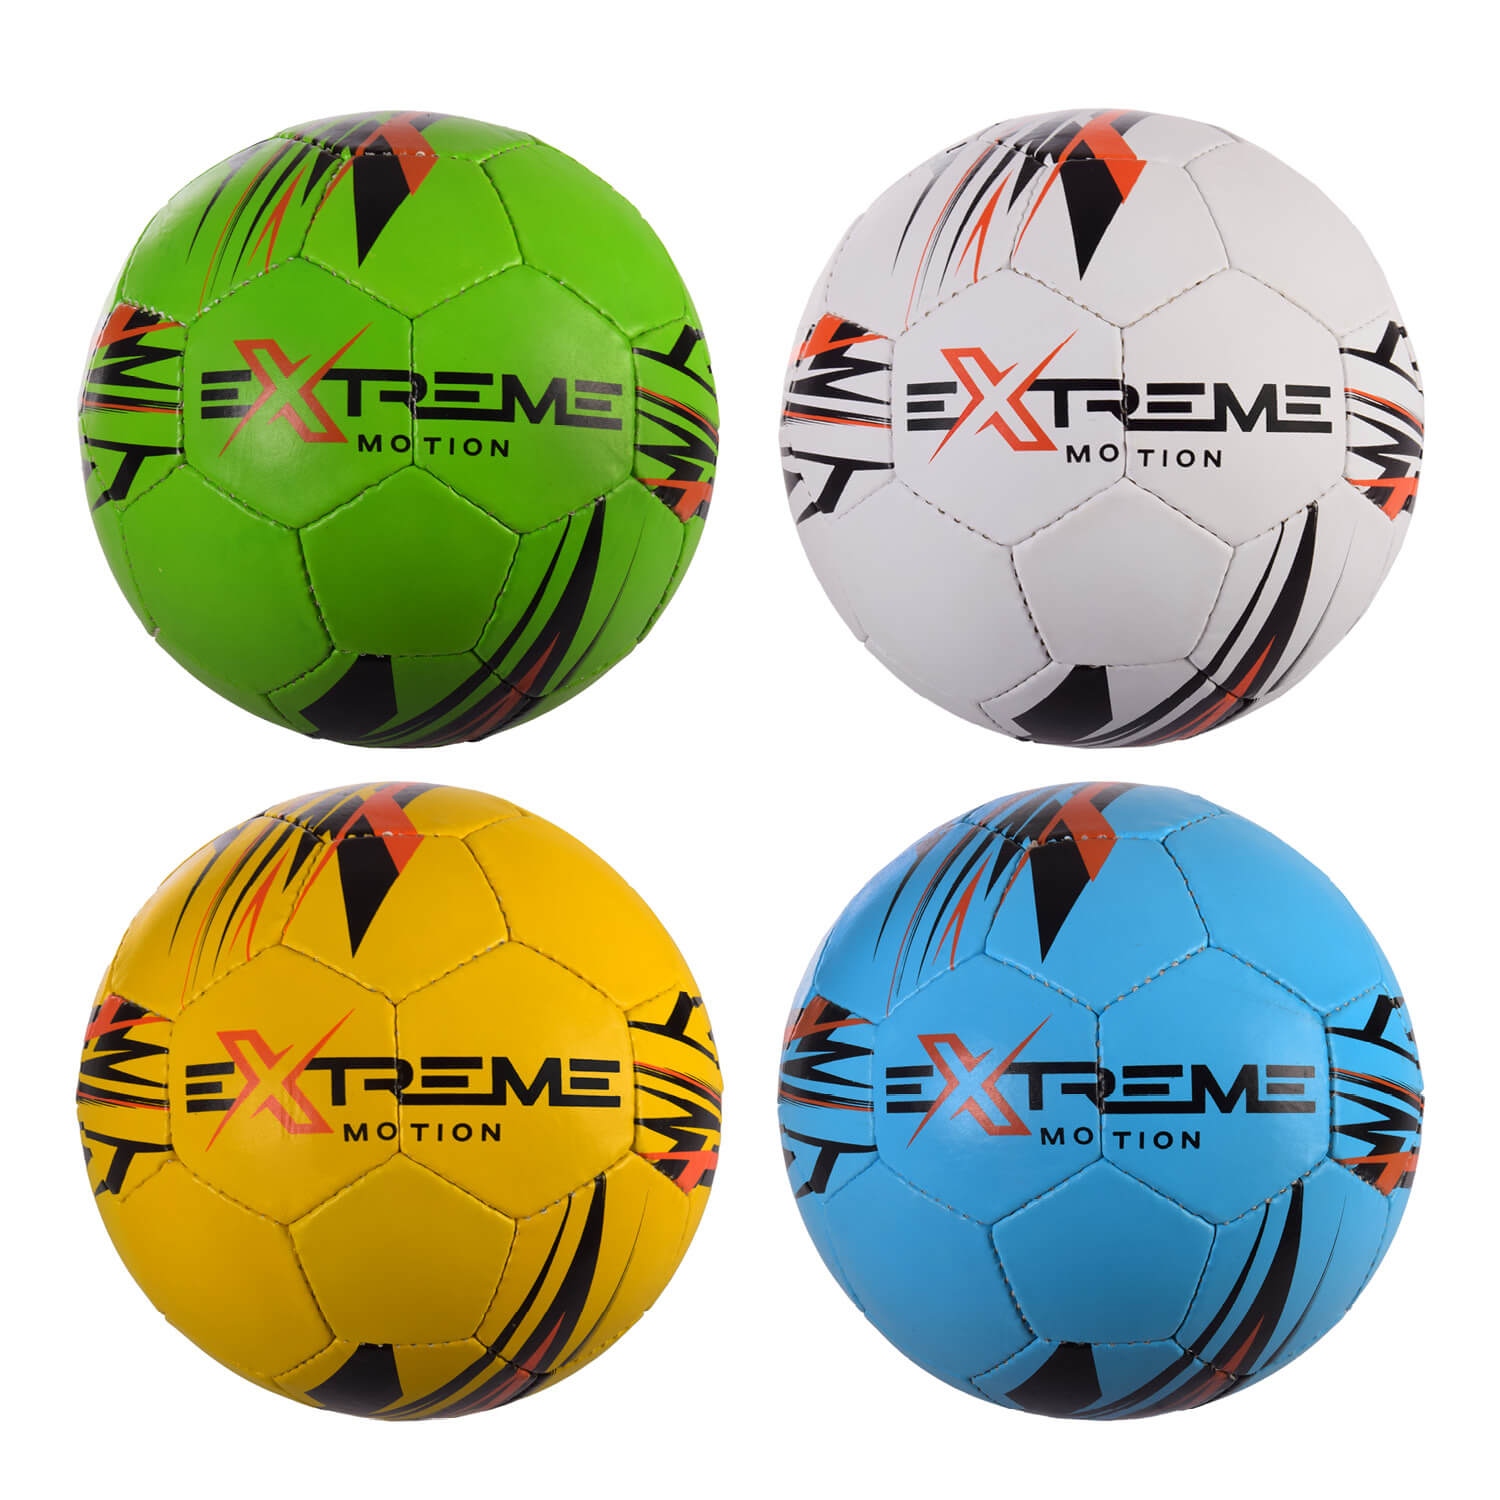 

Мяч футбольный Extreme Motion №5 материал PU вес 410 гр FP2104 Extreme Motion (FP2104)